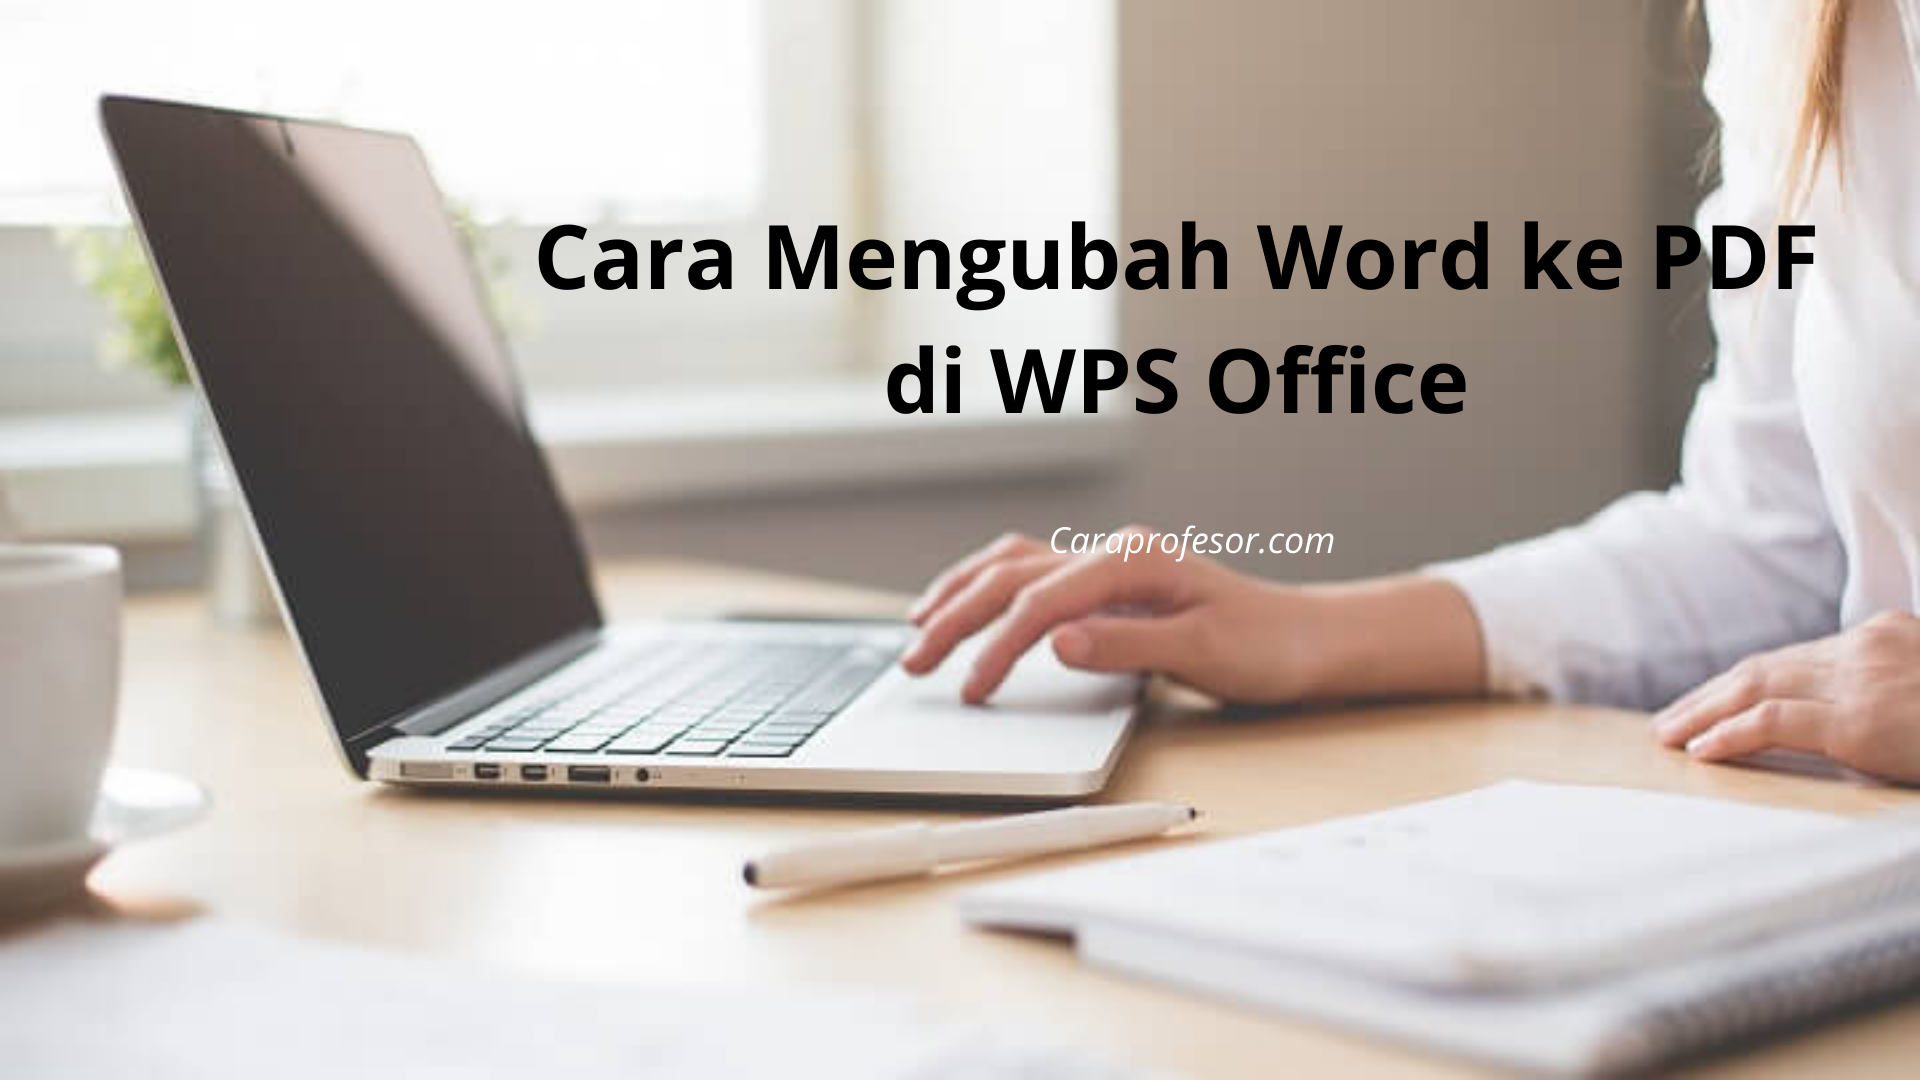 Cara Mengubah Word ke PDF di WPS Office